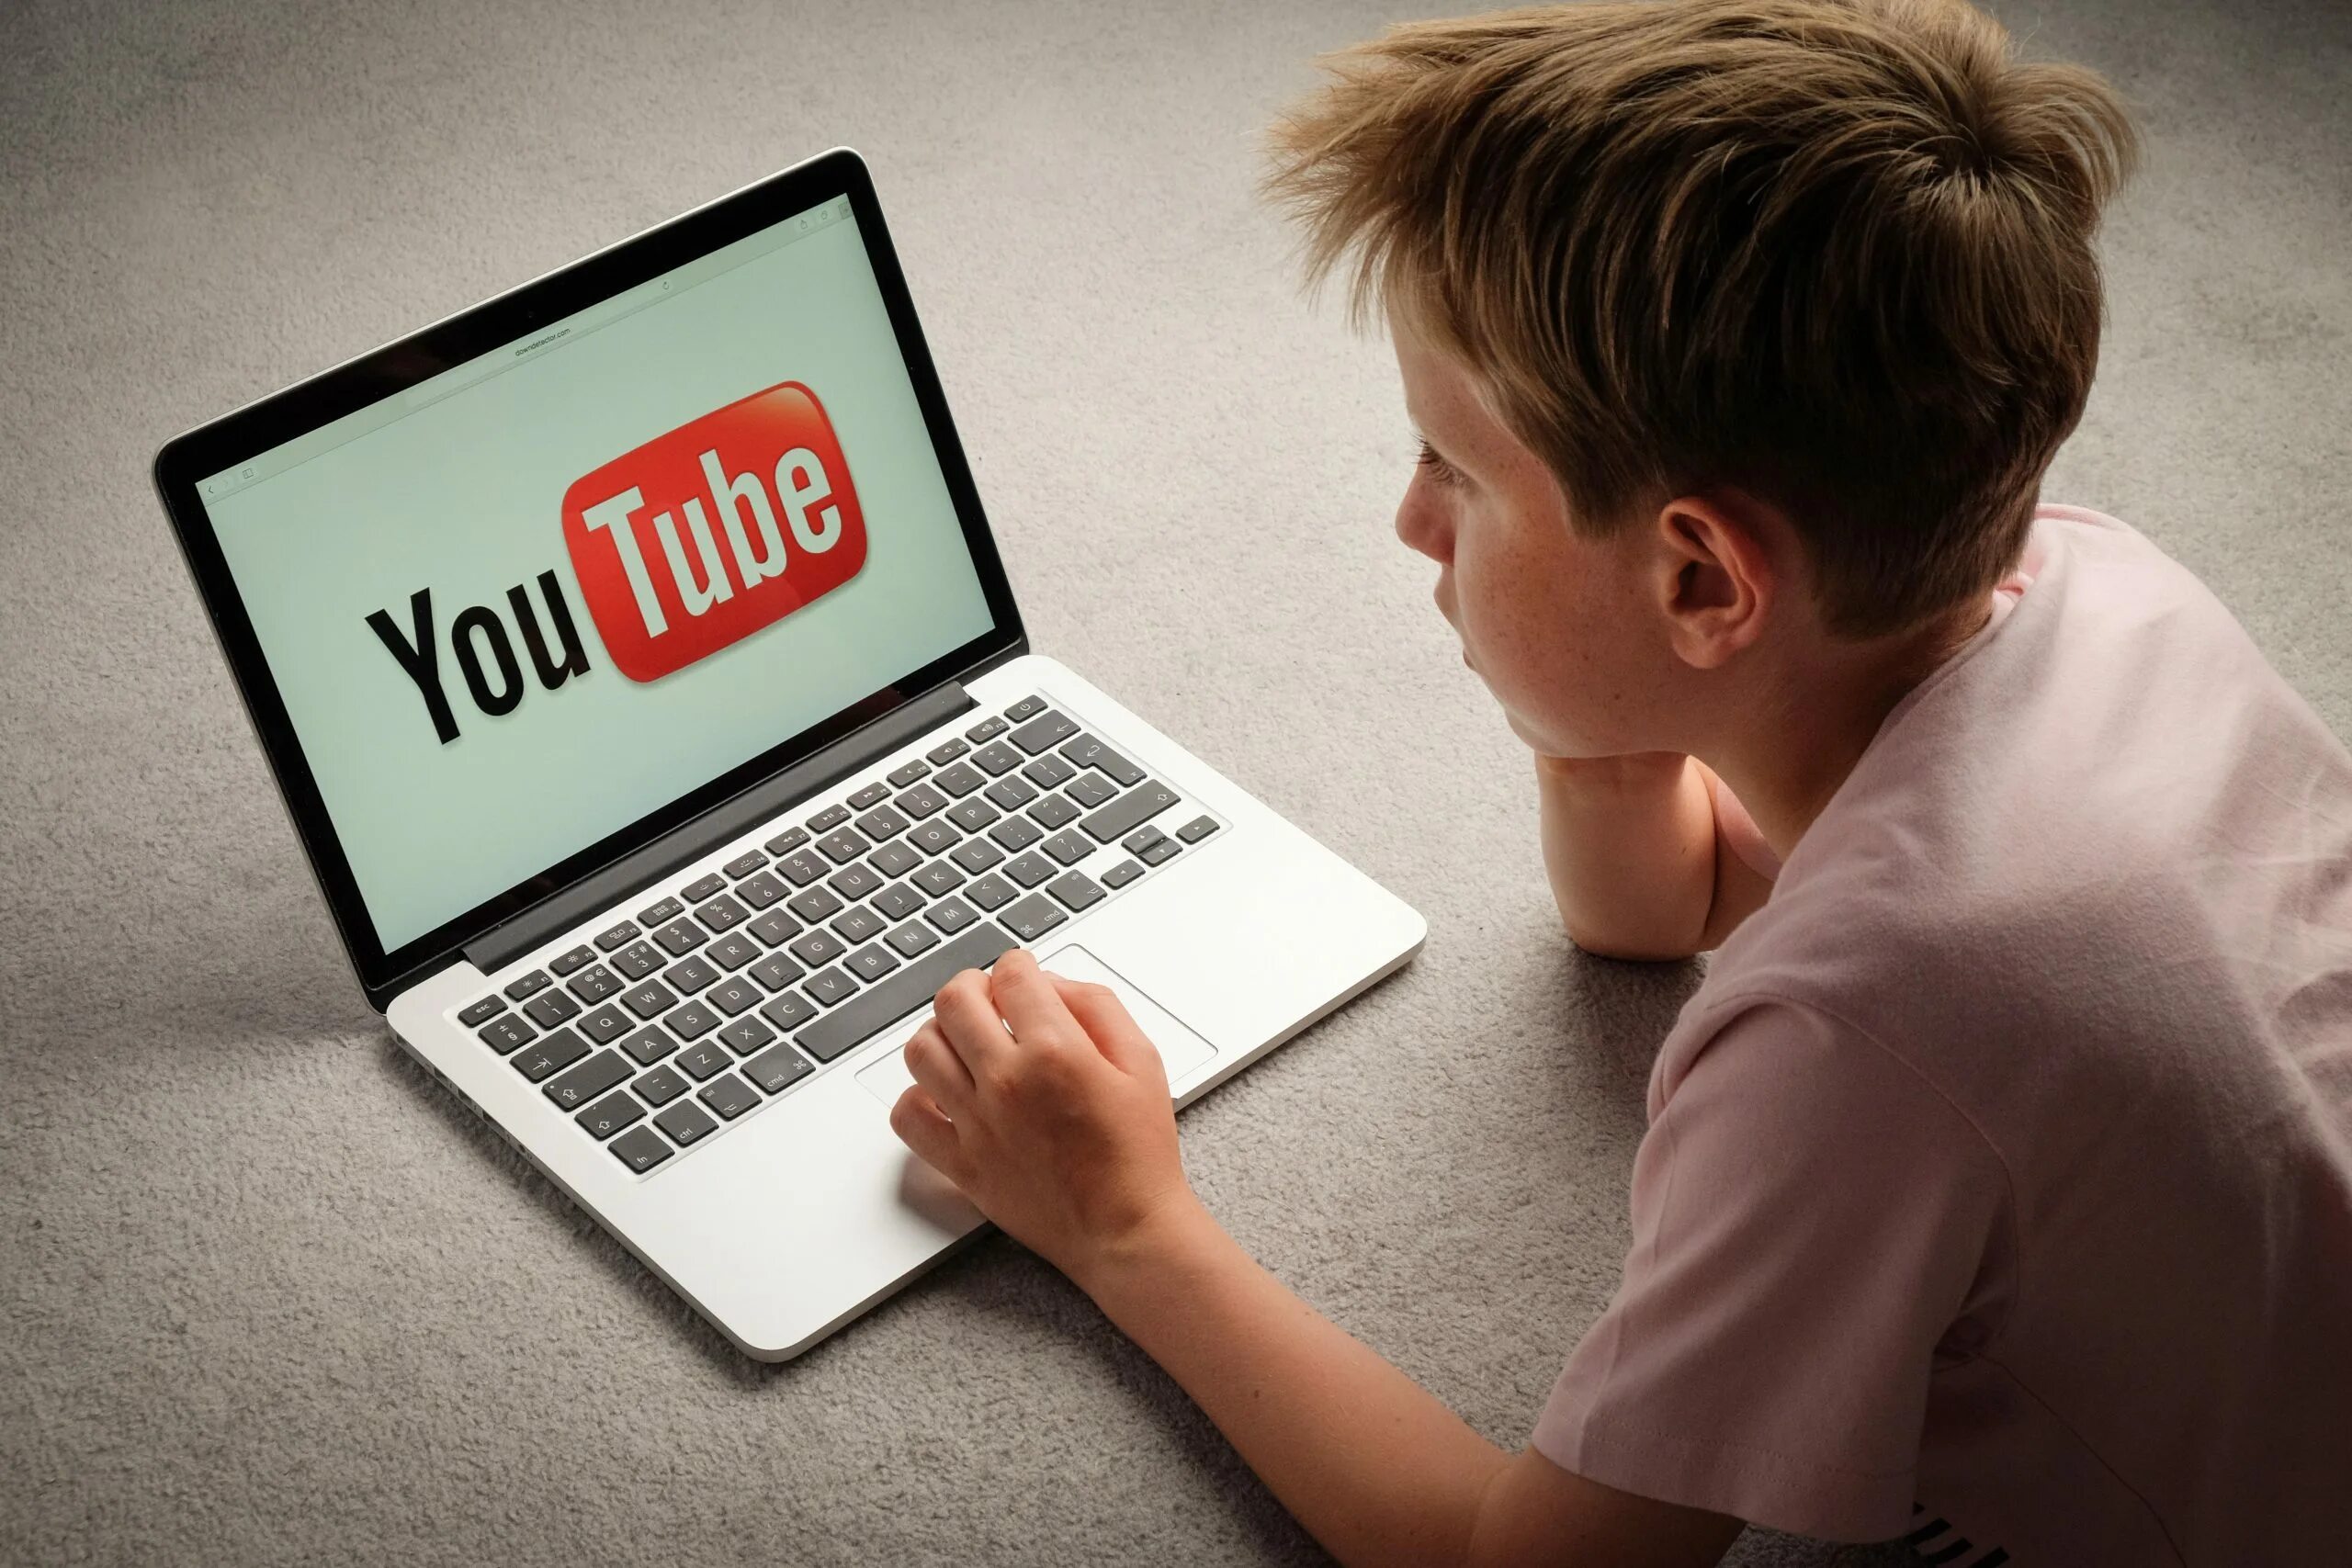 Контент для детей. Ютуб детям. Youtube детский контент. Интересный контент для детей.